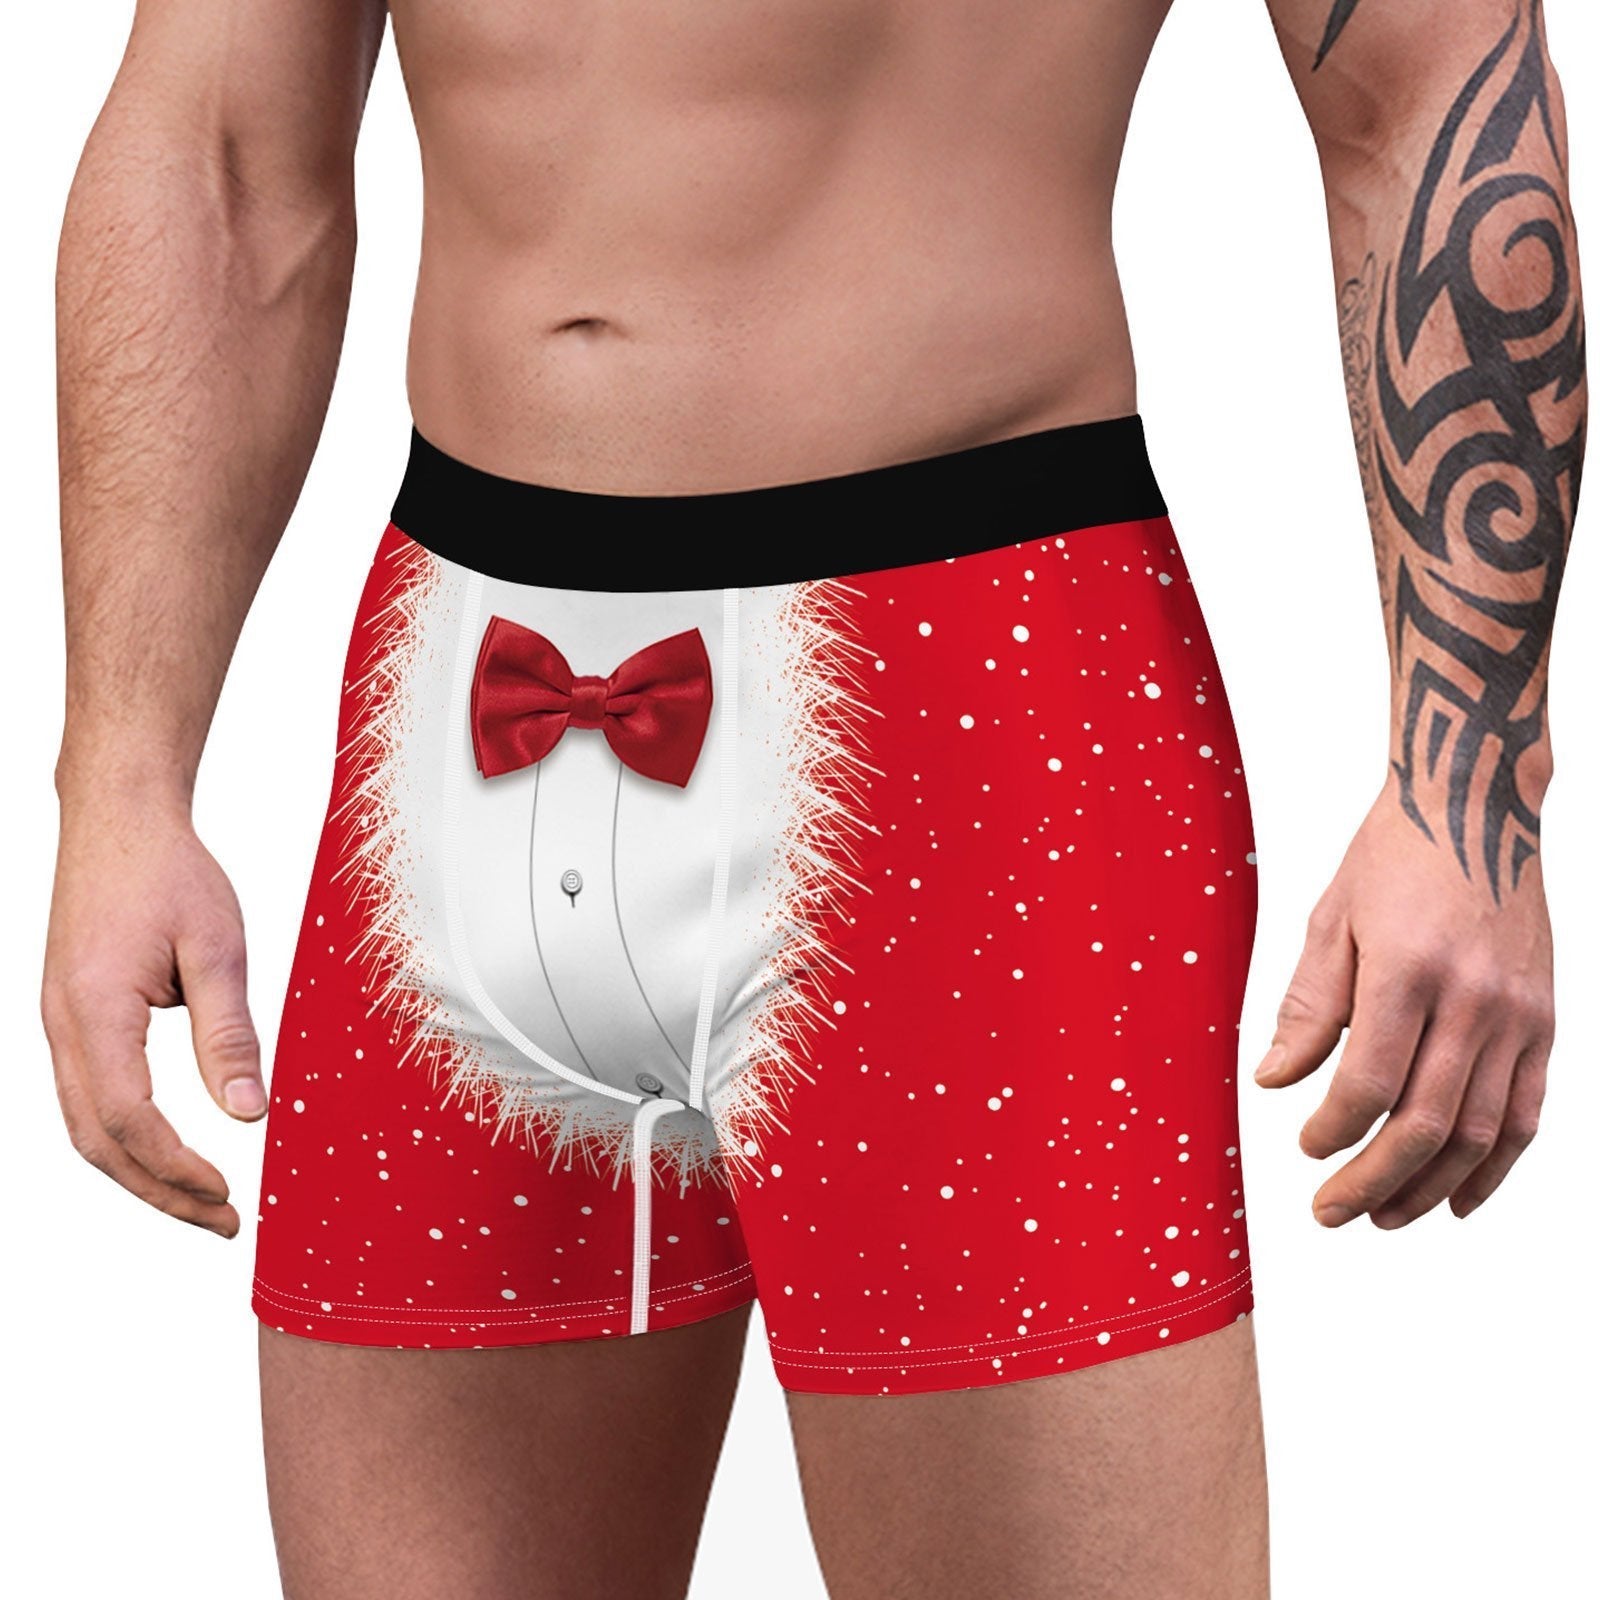 JCSTK - XMAS GIFT - Mens Christmas Printed Boxer Shorts Holiday Underwear